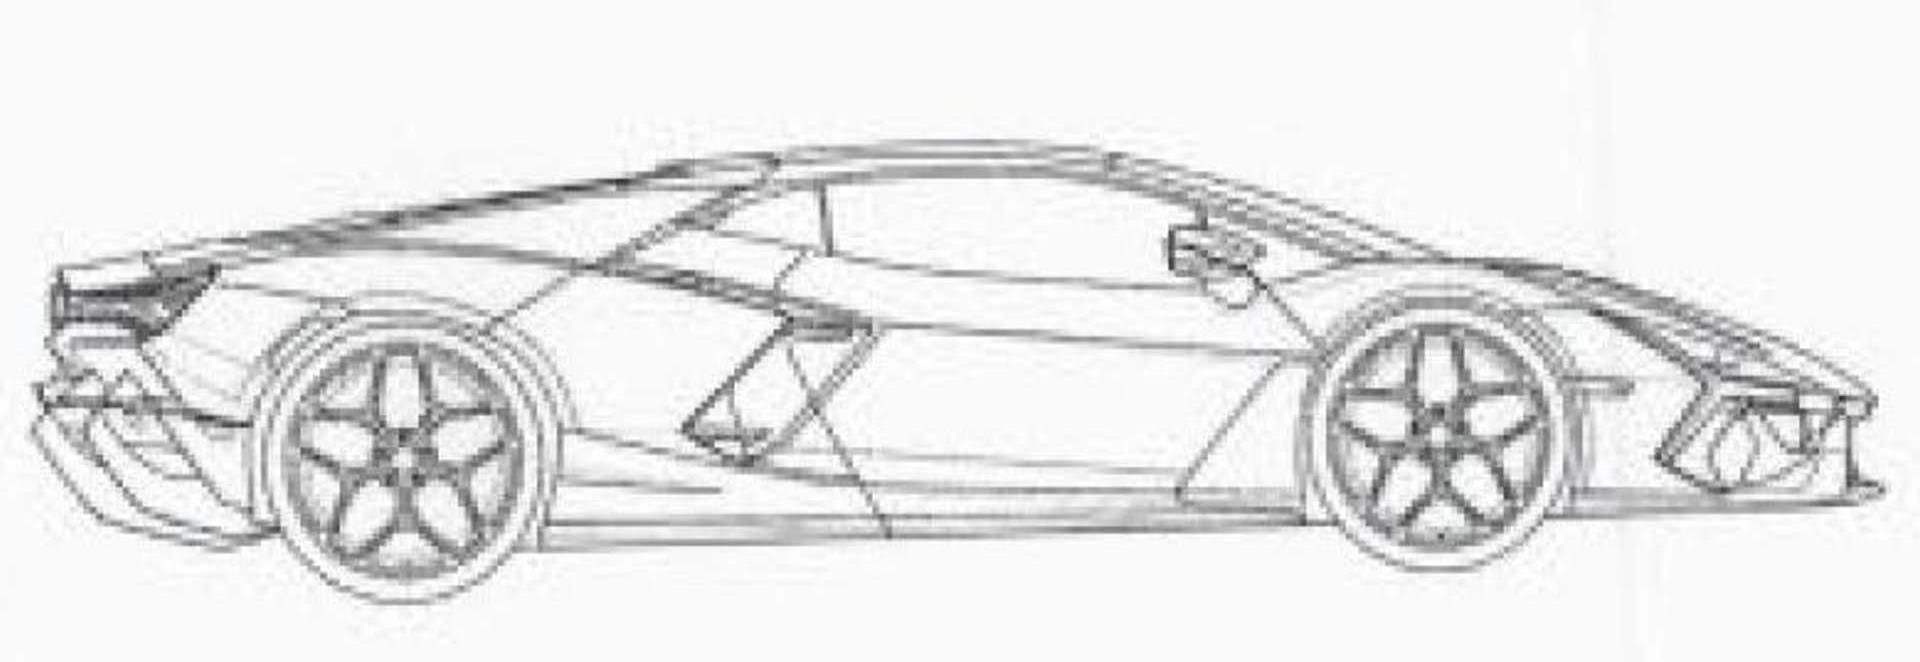 Lamborghini-Aventador-Replacement-Patent-Images-5